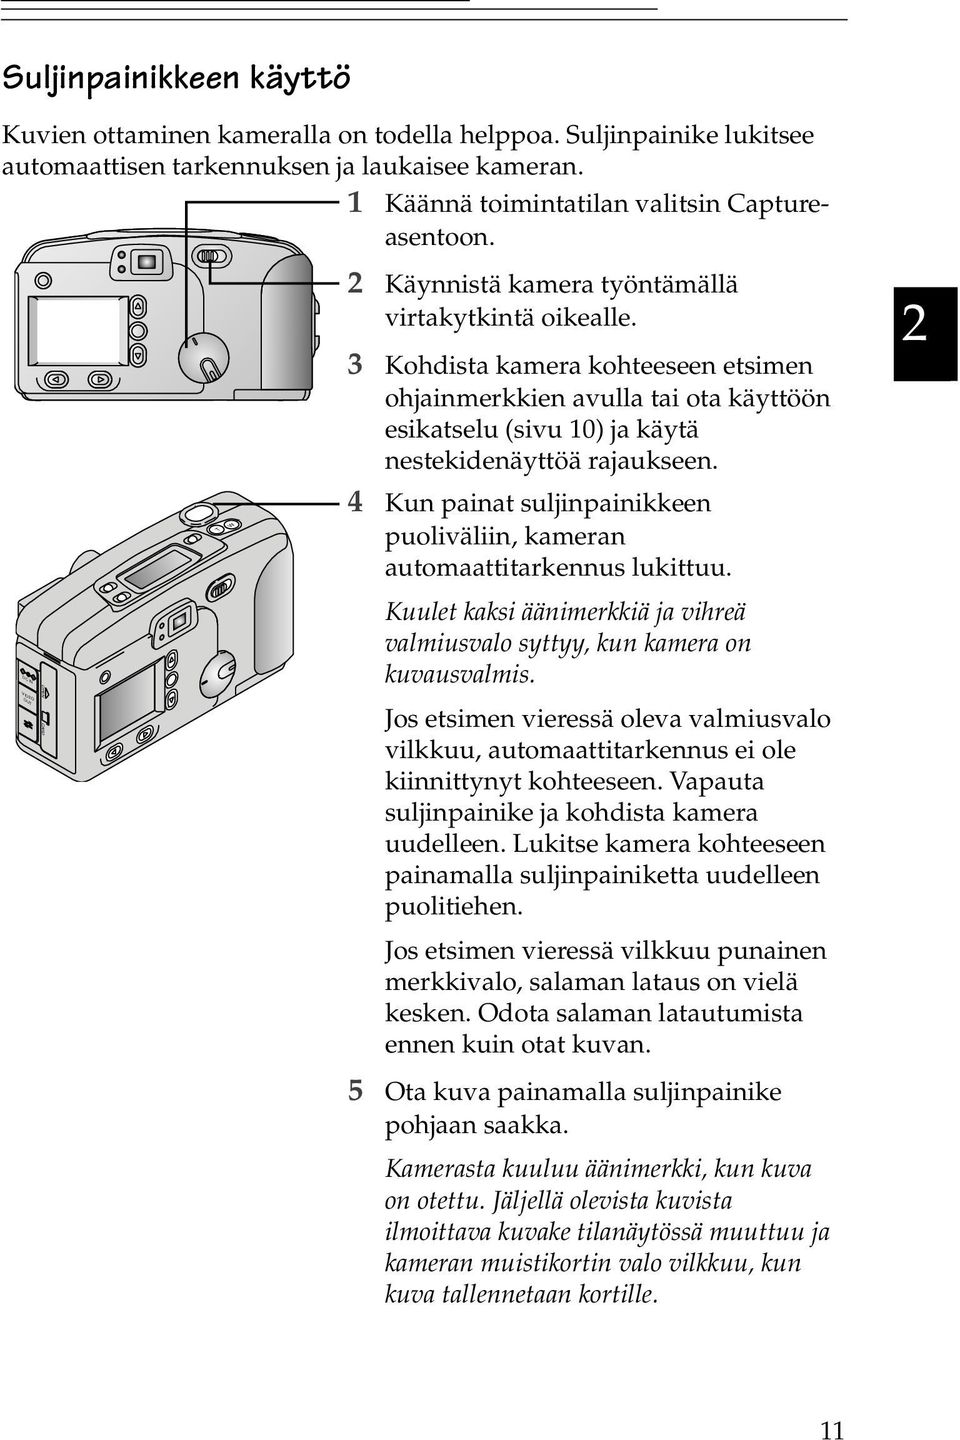 3 Kohdista kamera kohteeseen etsimen ohjainmerkkien avulla tai ota käyttöön esikatselu (sivu 10) ja käytä nestekidenäyttöä rajaukseen.